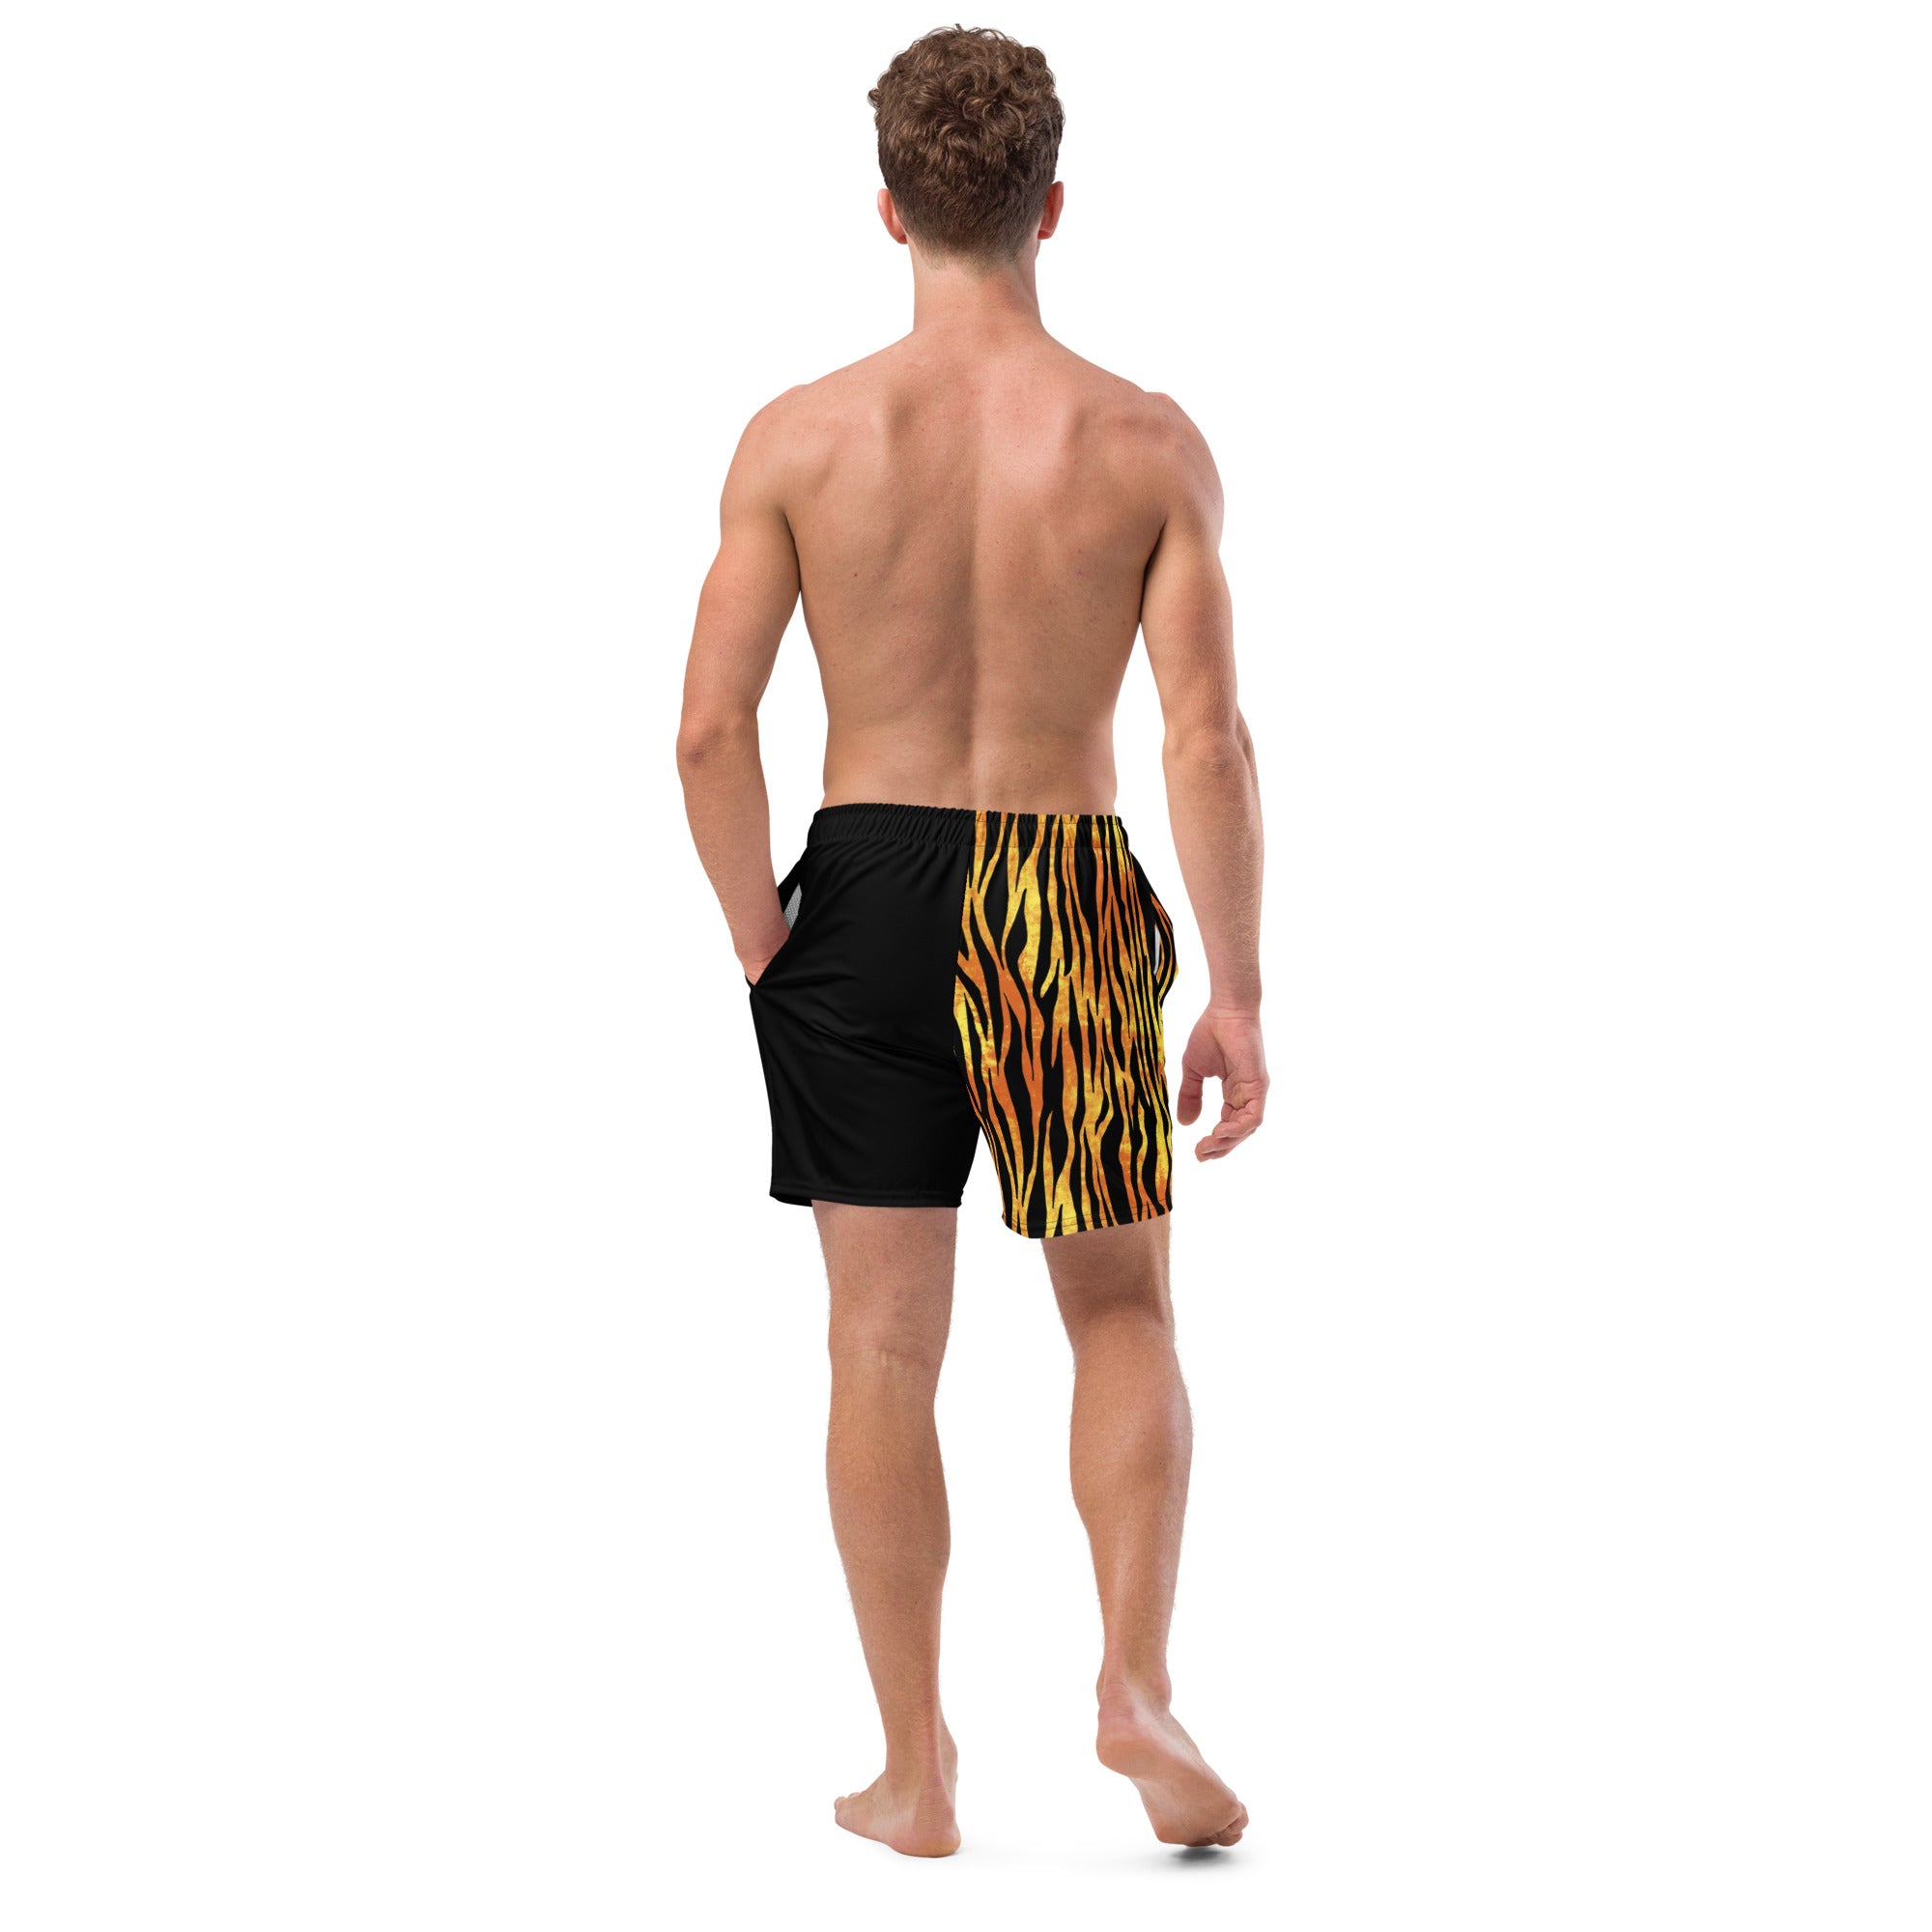 He's On Fire 911 Men's swim trunks